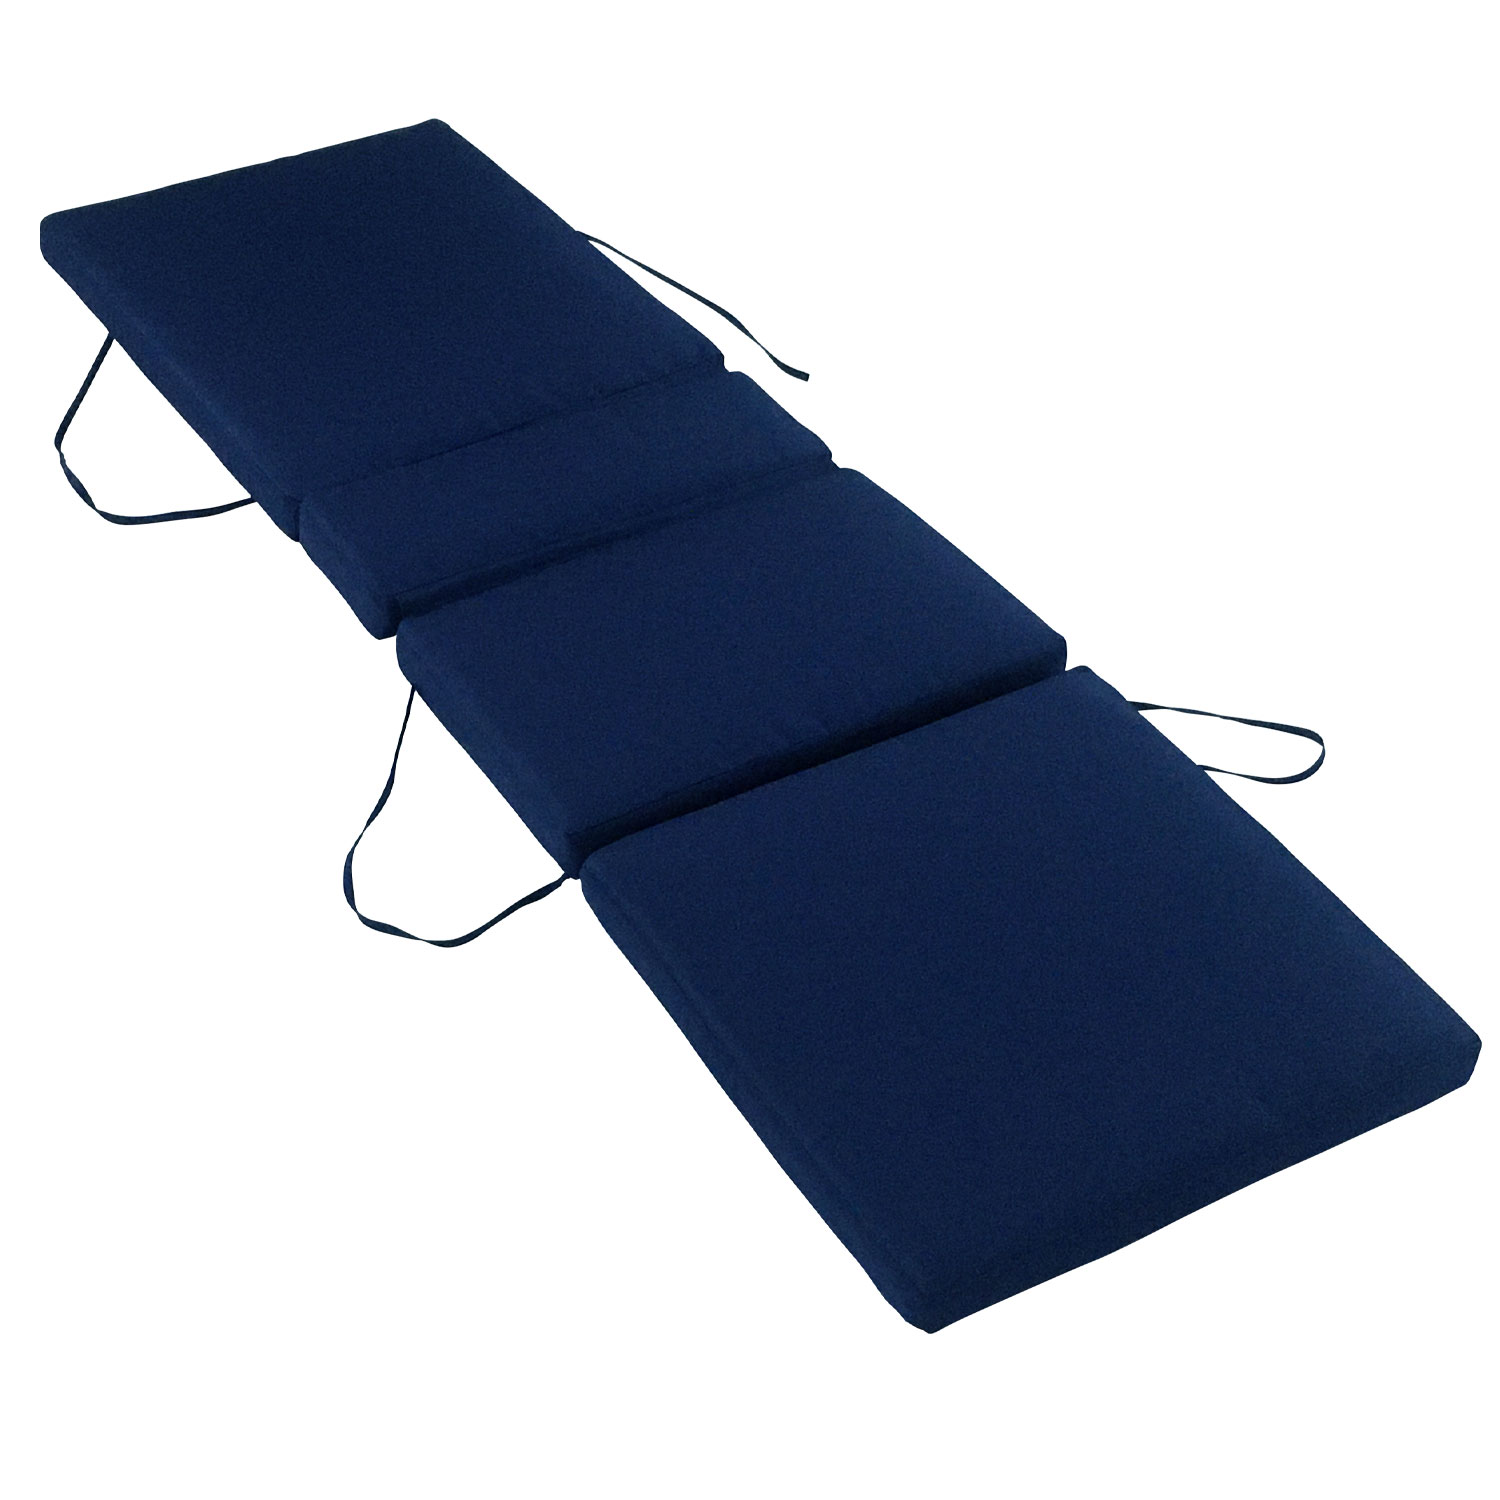 Matelas pour bain de soleil 200cm en tissu bleu